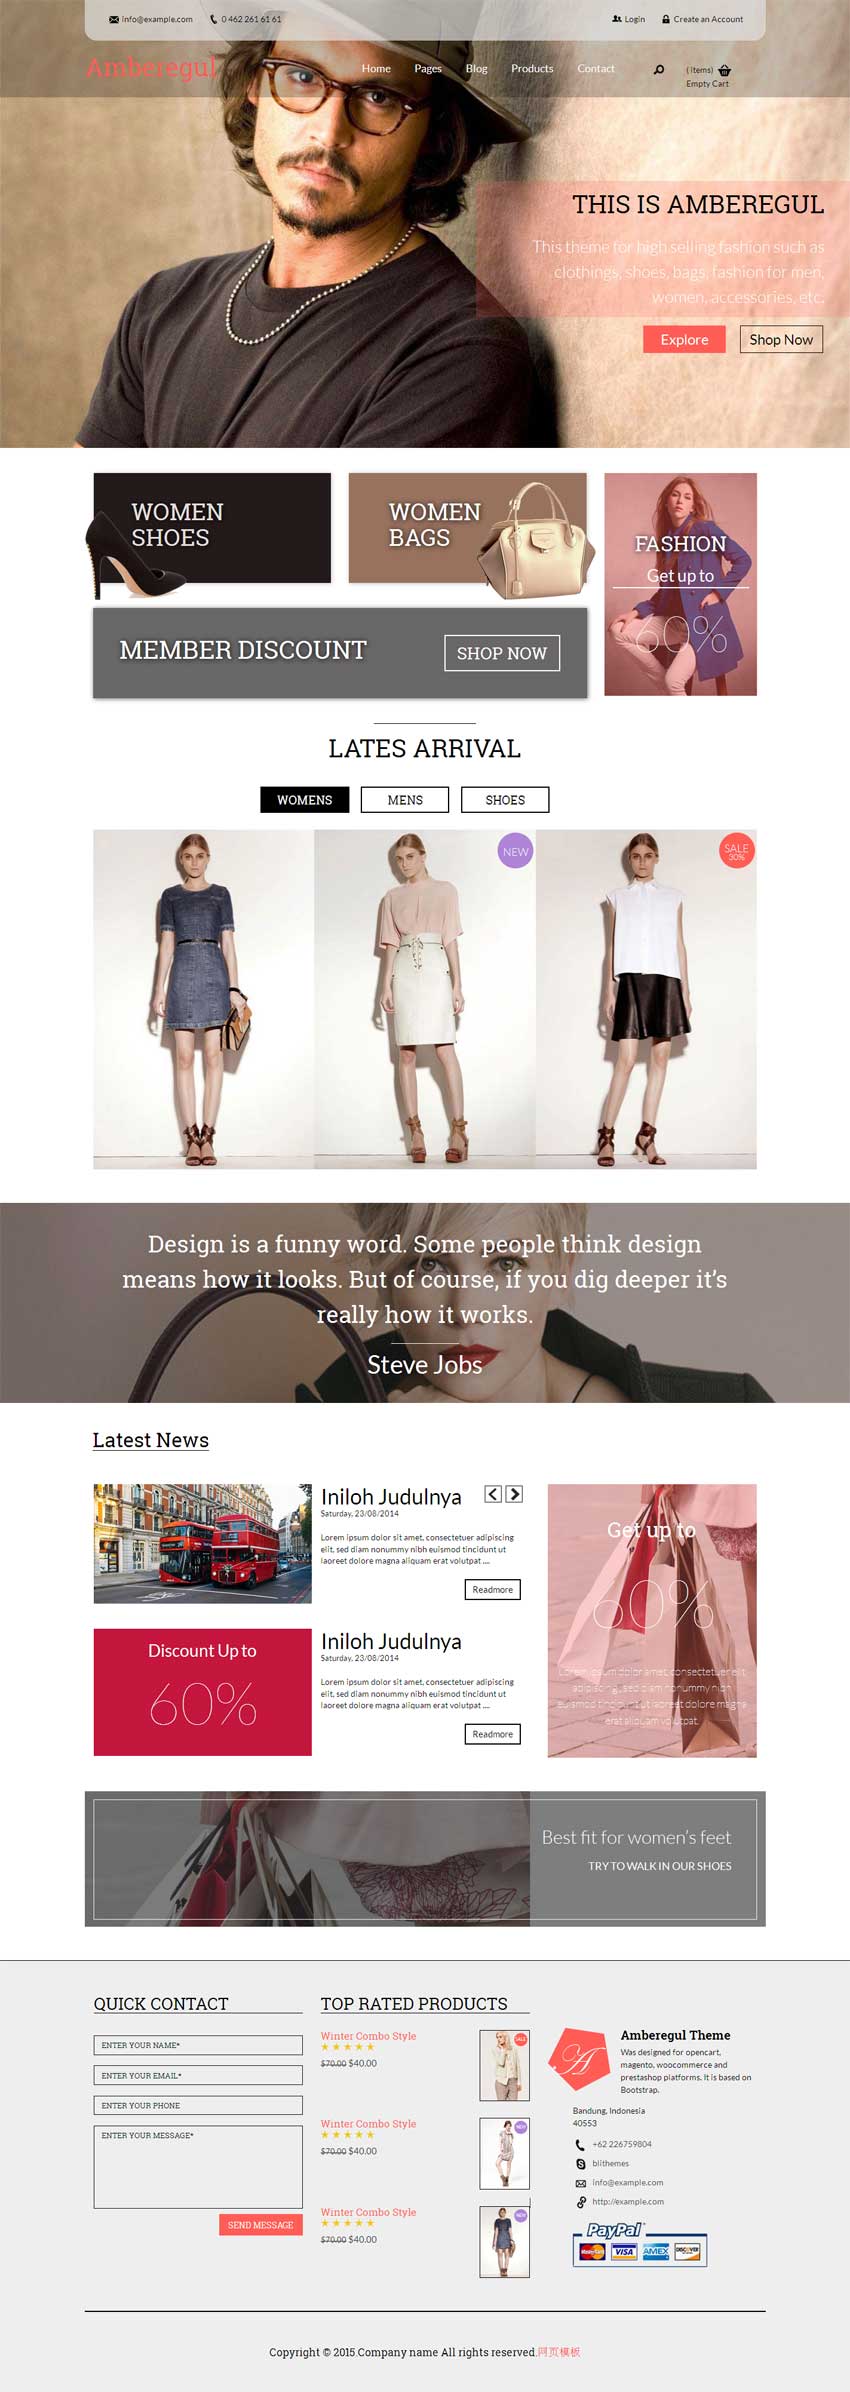 国外简洁的时尚服装购物商城模板html下载